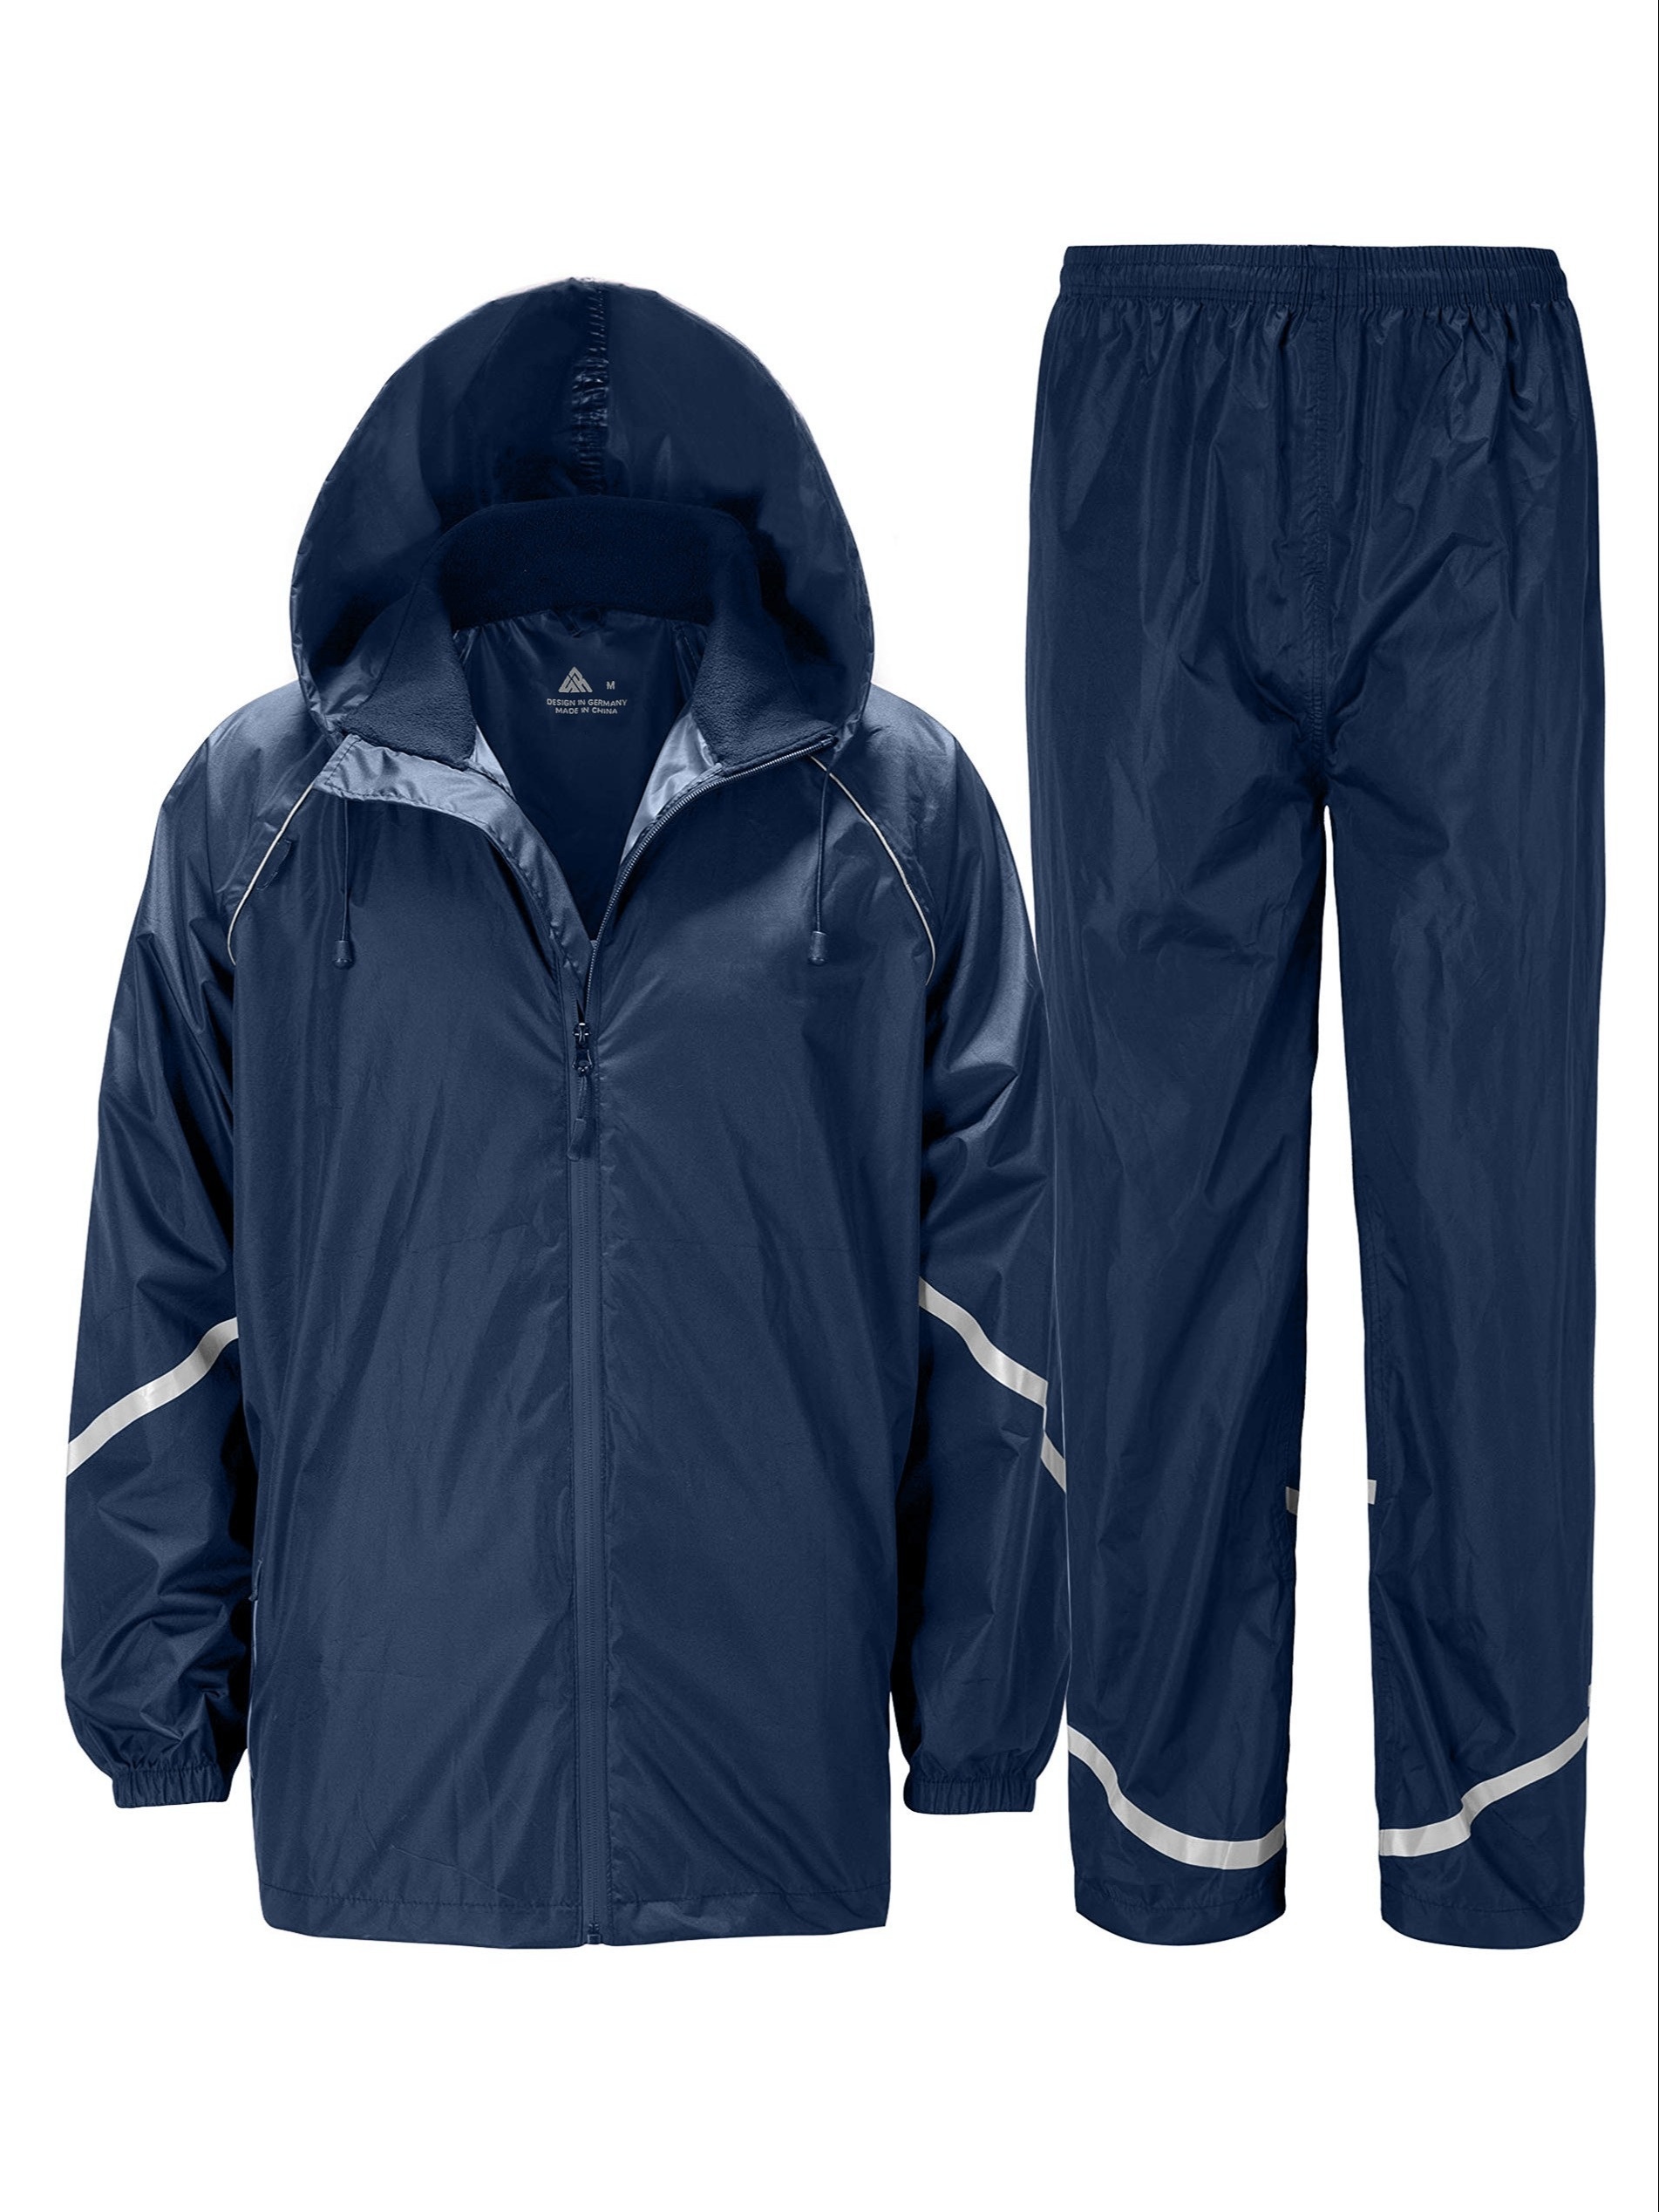 TOWN&FIELD Rain Suits for Fishing Waterproof Rain Gear for Men